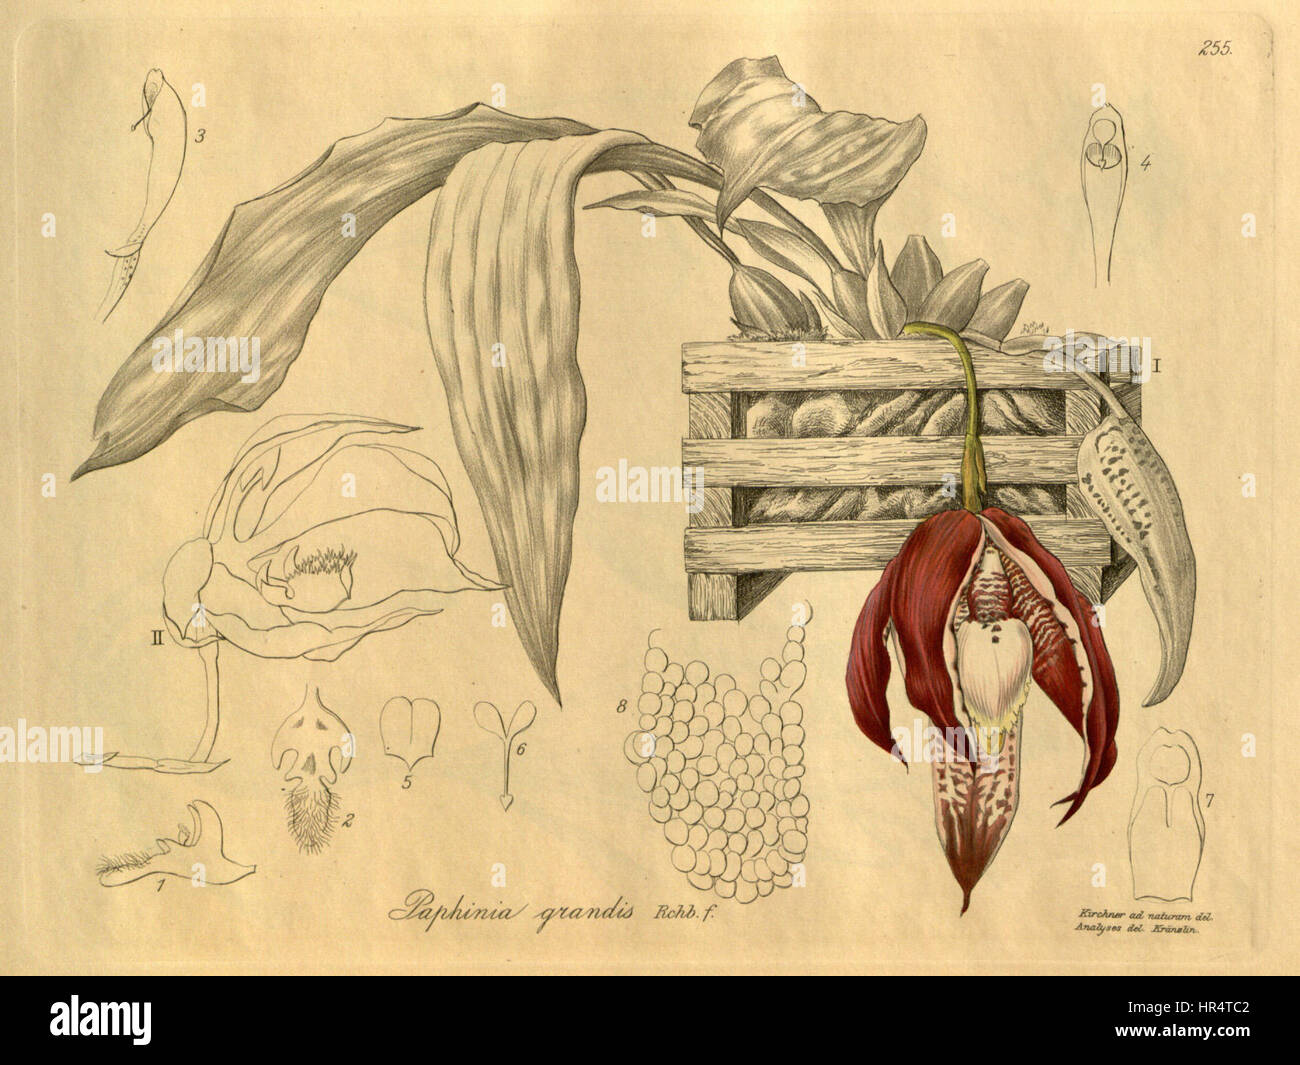 Paphinia grandiflora (grandis) - Xenia vol. 3 pl. 255 (1900) Stock Photo